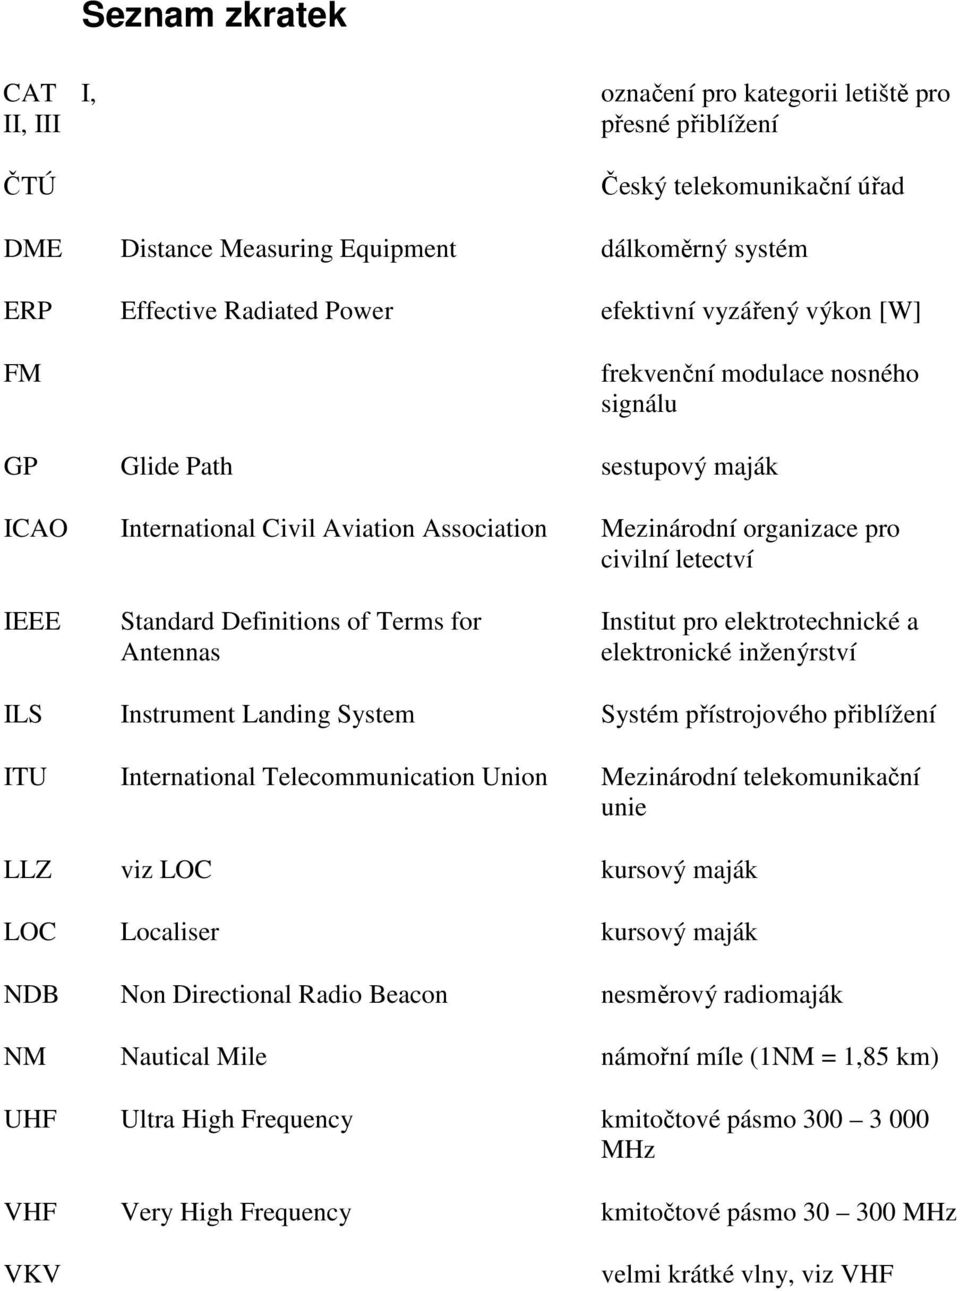 Standard Definitions of Terms for Antennas Institut pro elektrotechnické a elektronické inženýrství ILS Instrument Landing System Systém přístrojového přiblížení ITU International Telecommunication